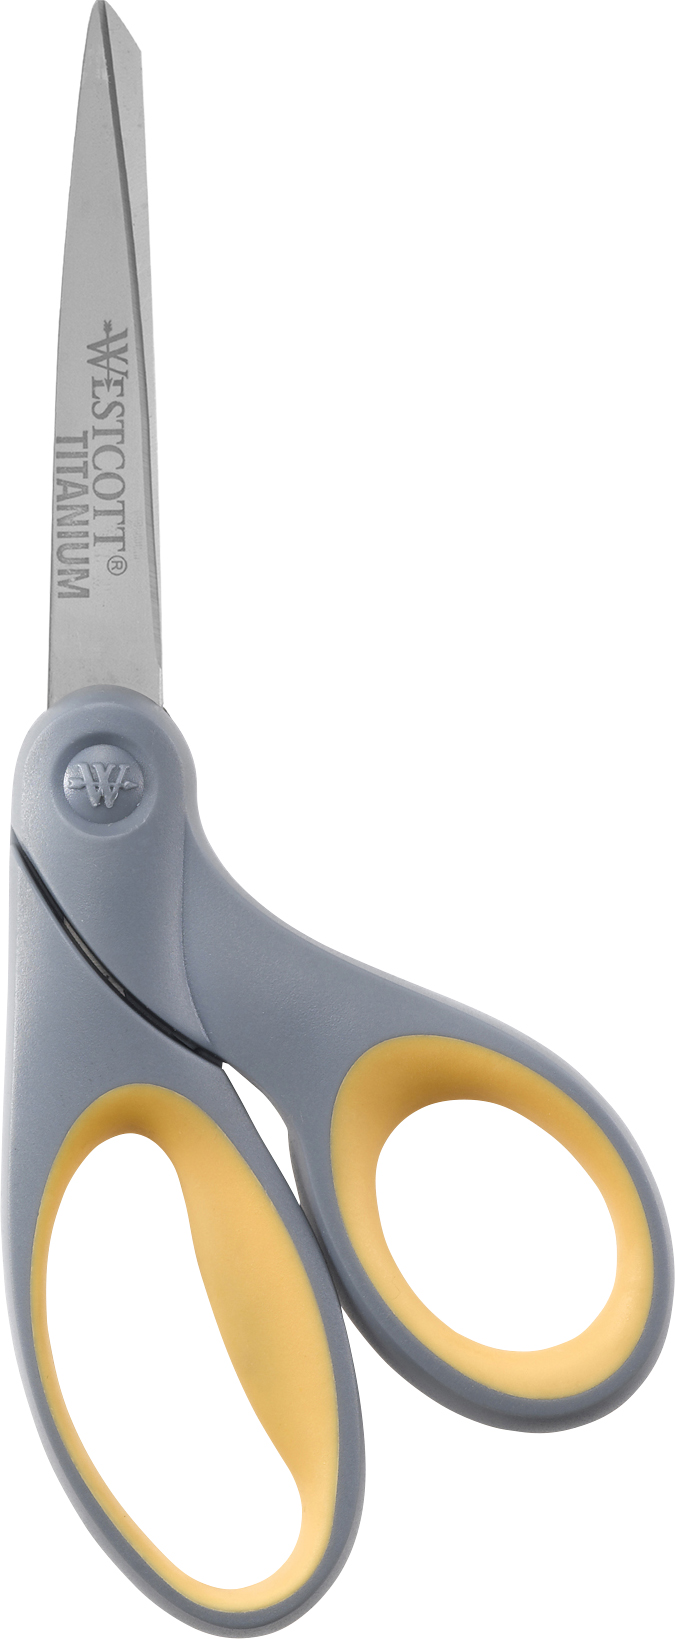 Westcott Titanium Bonded Scissors, 8" Bent (13731)